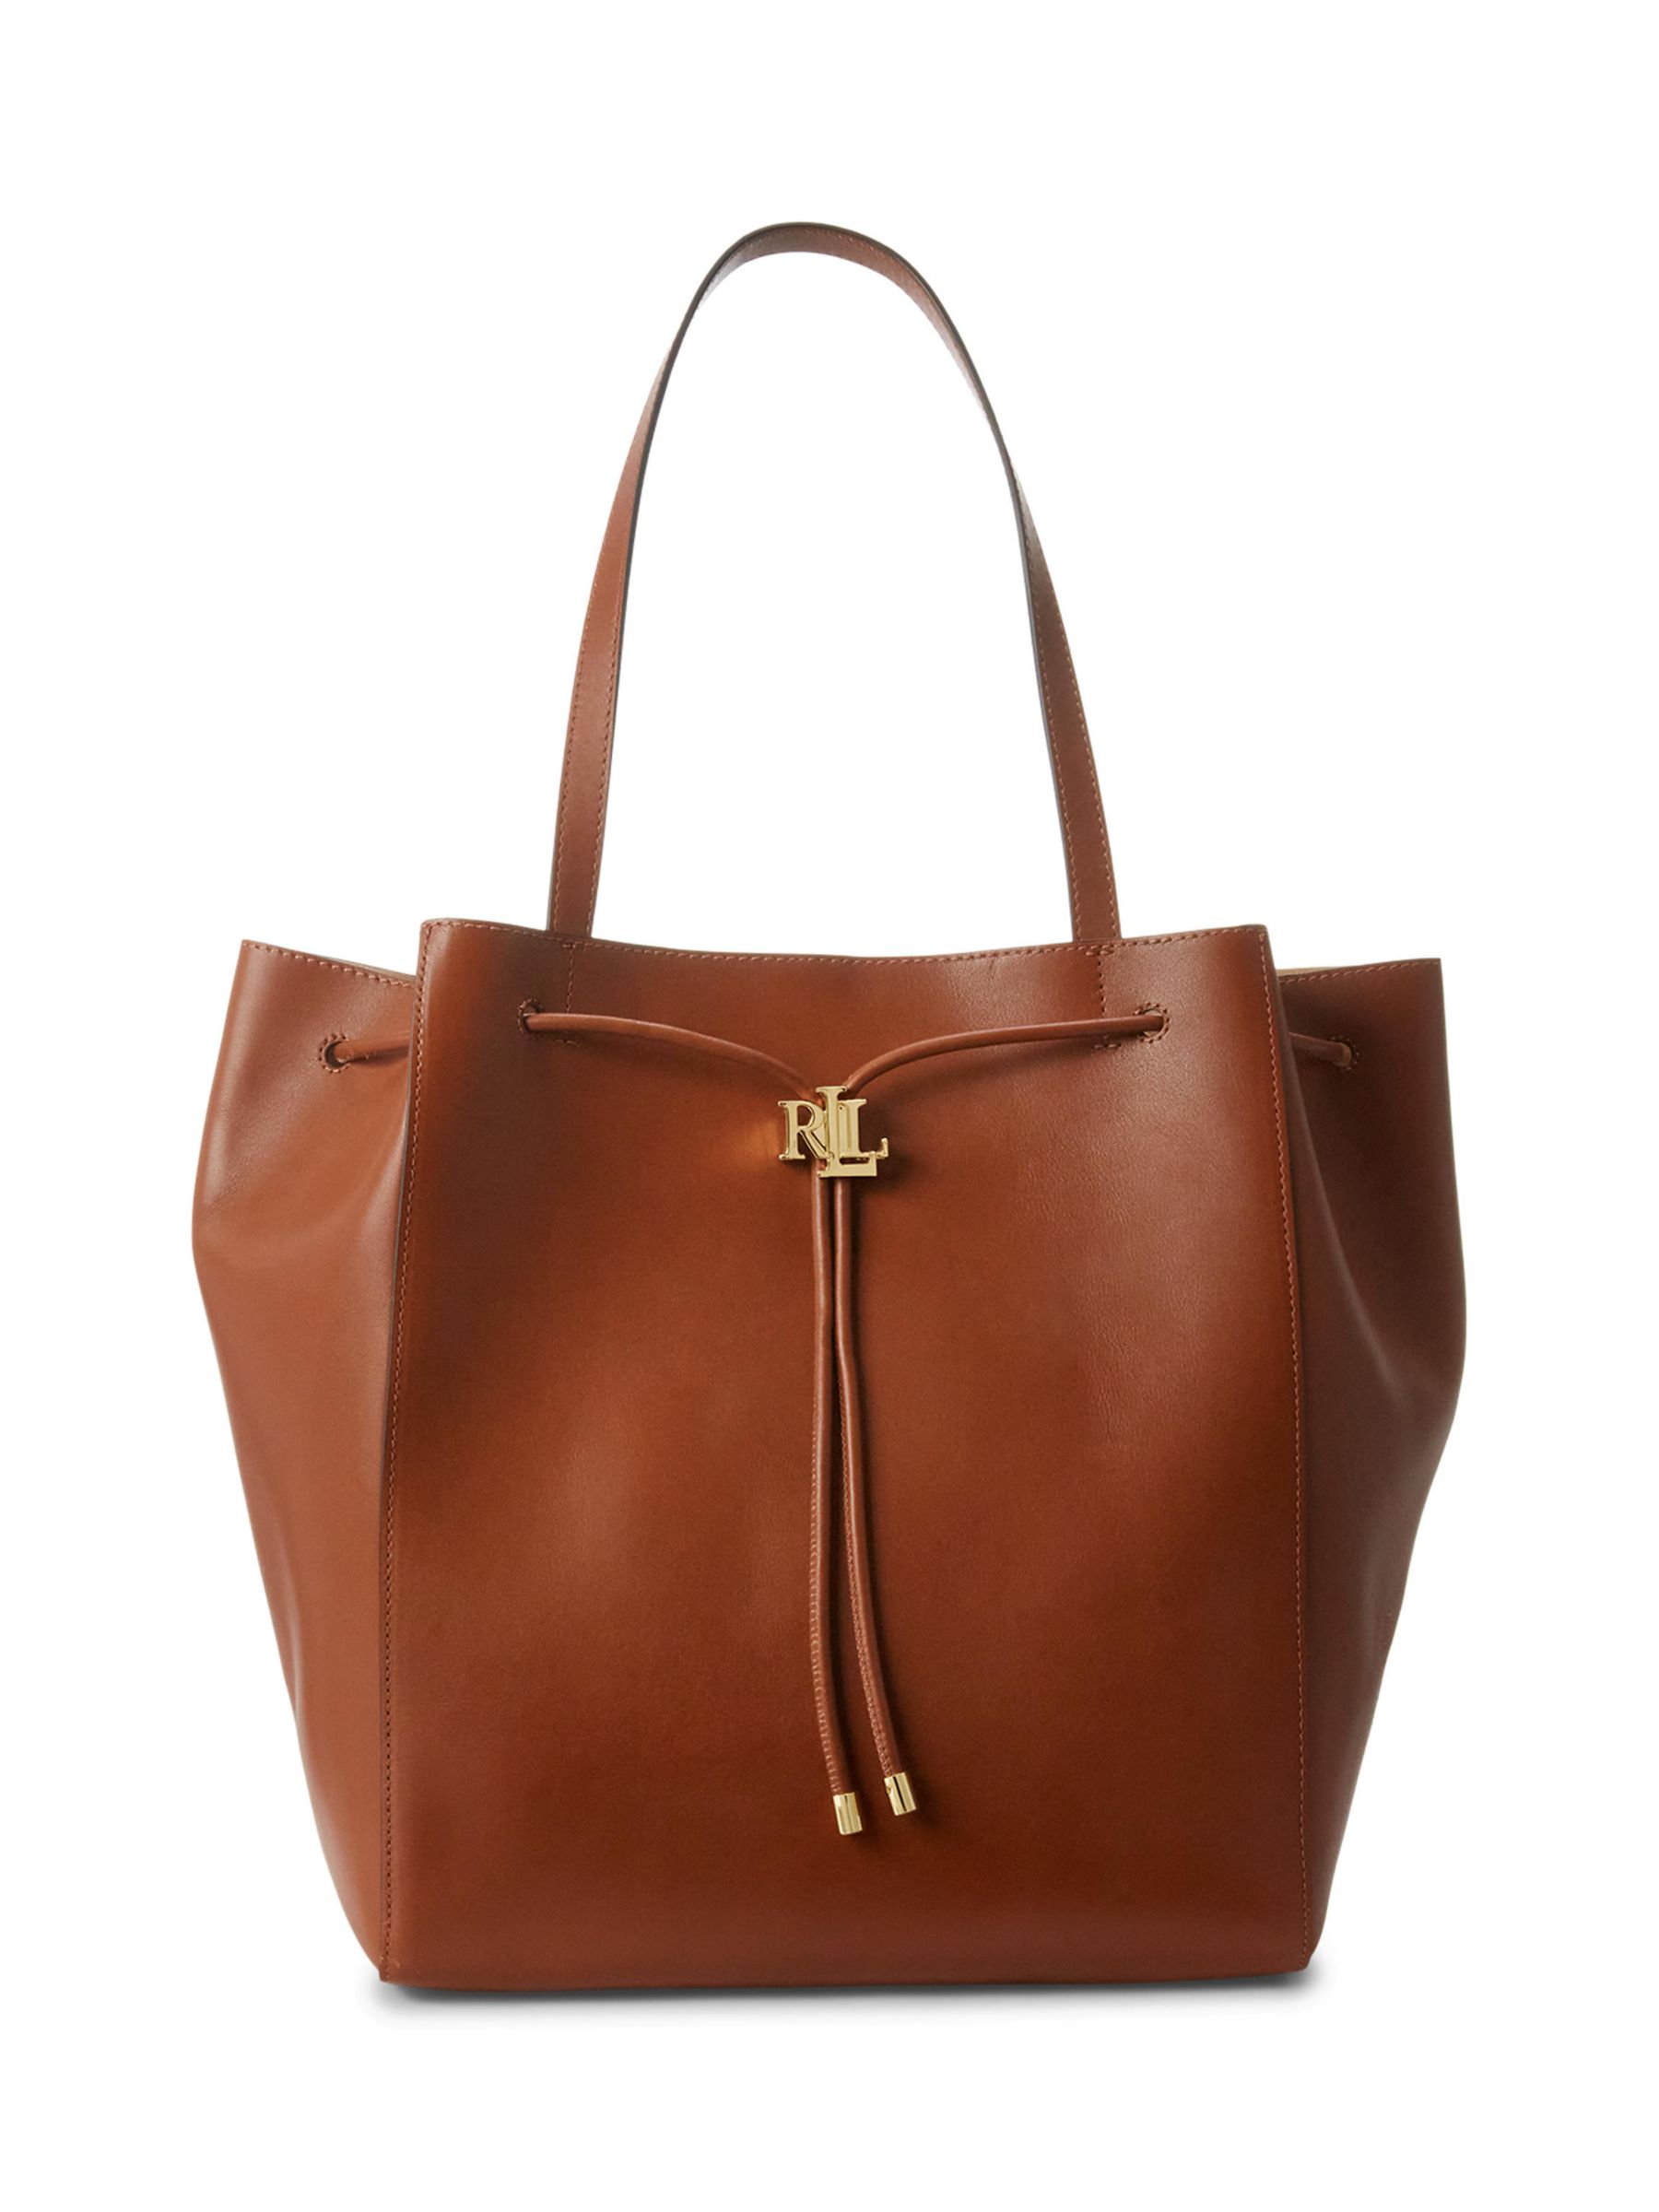 Lauren Ralph Lauren Andie Leather Tote Bag